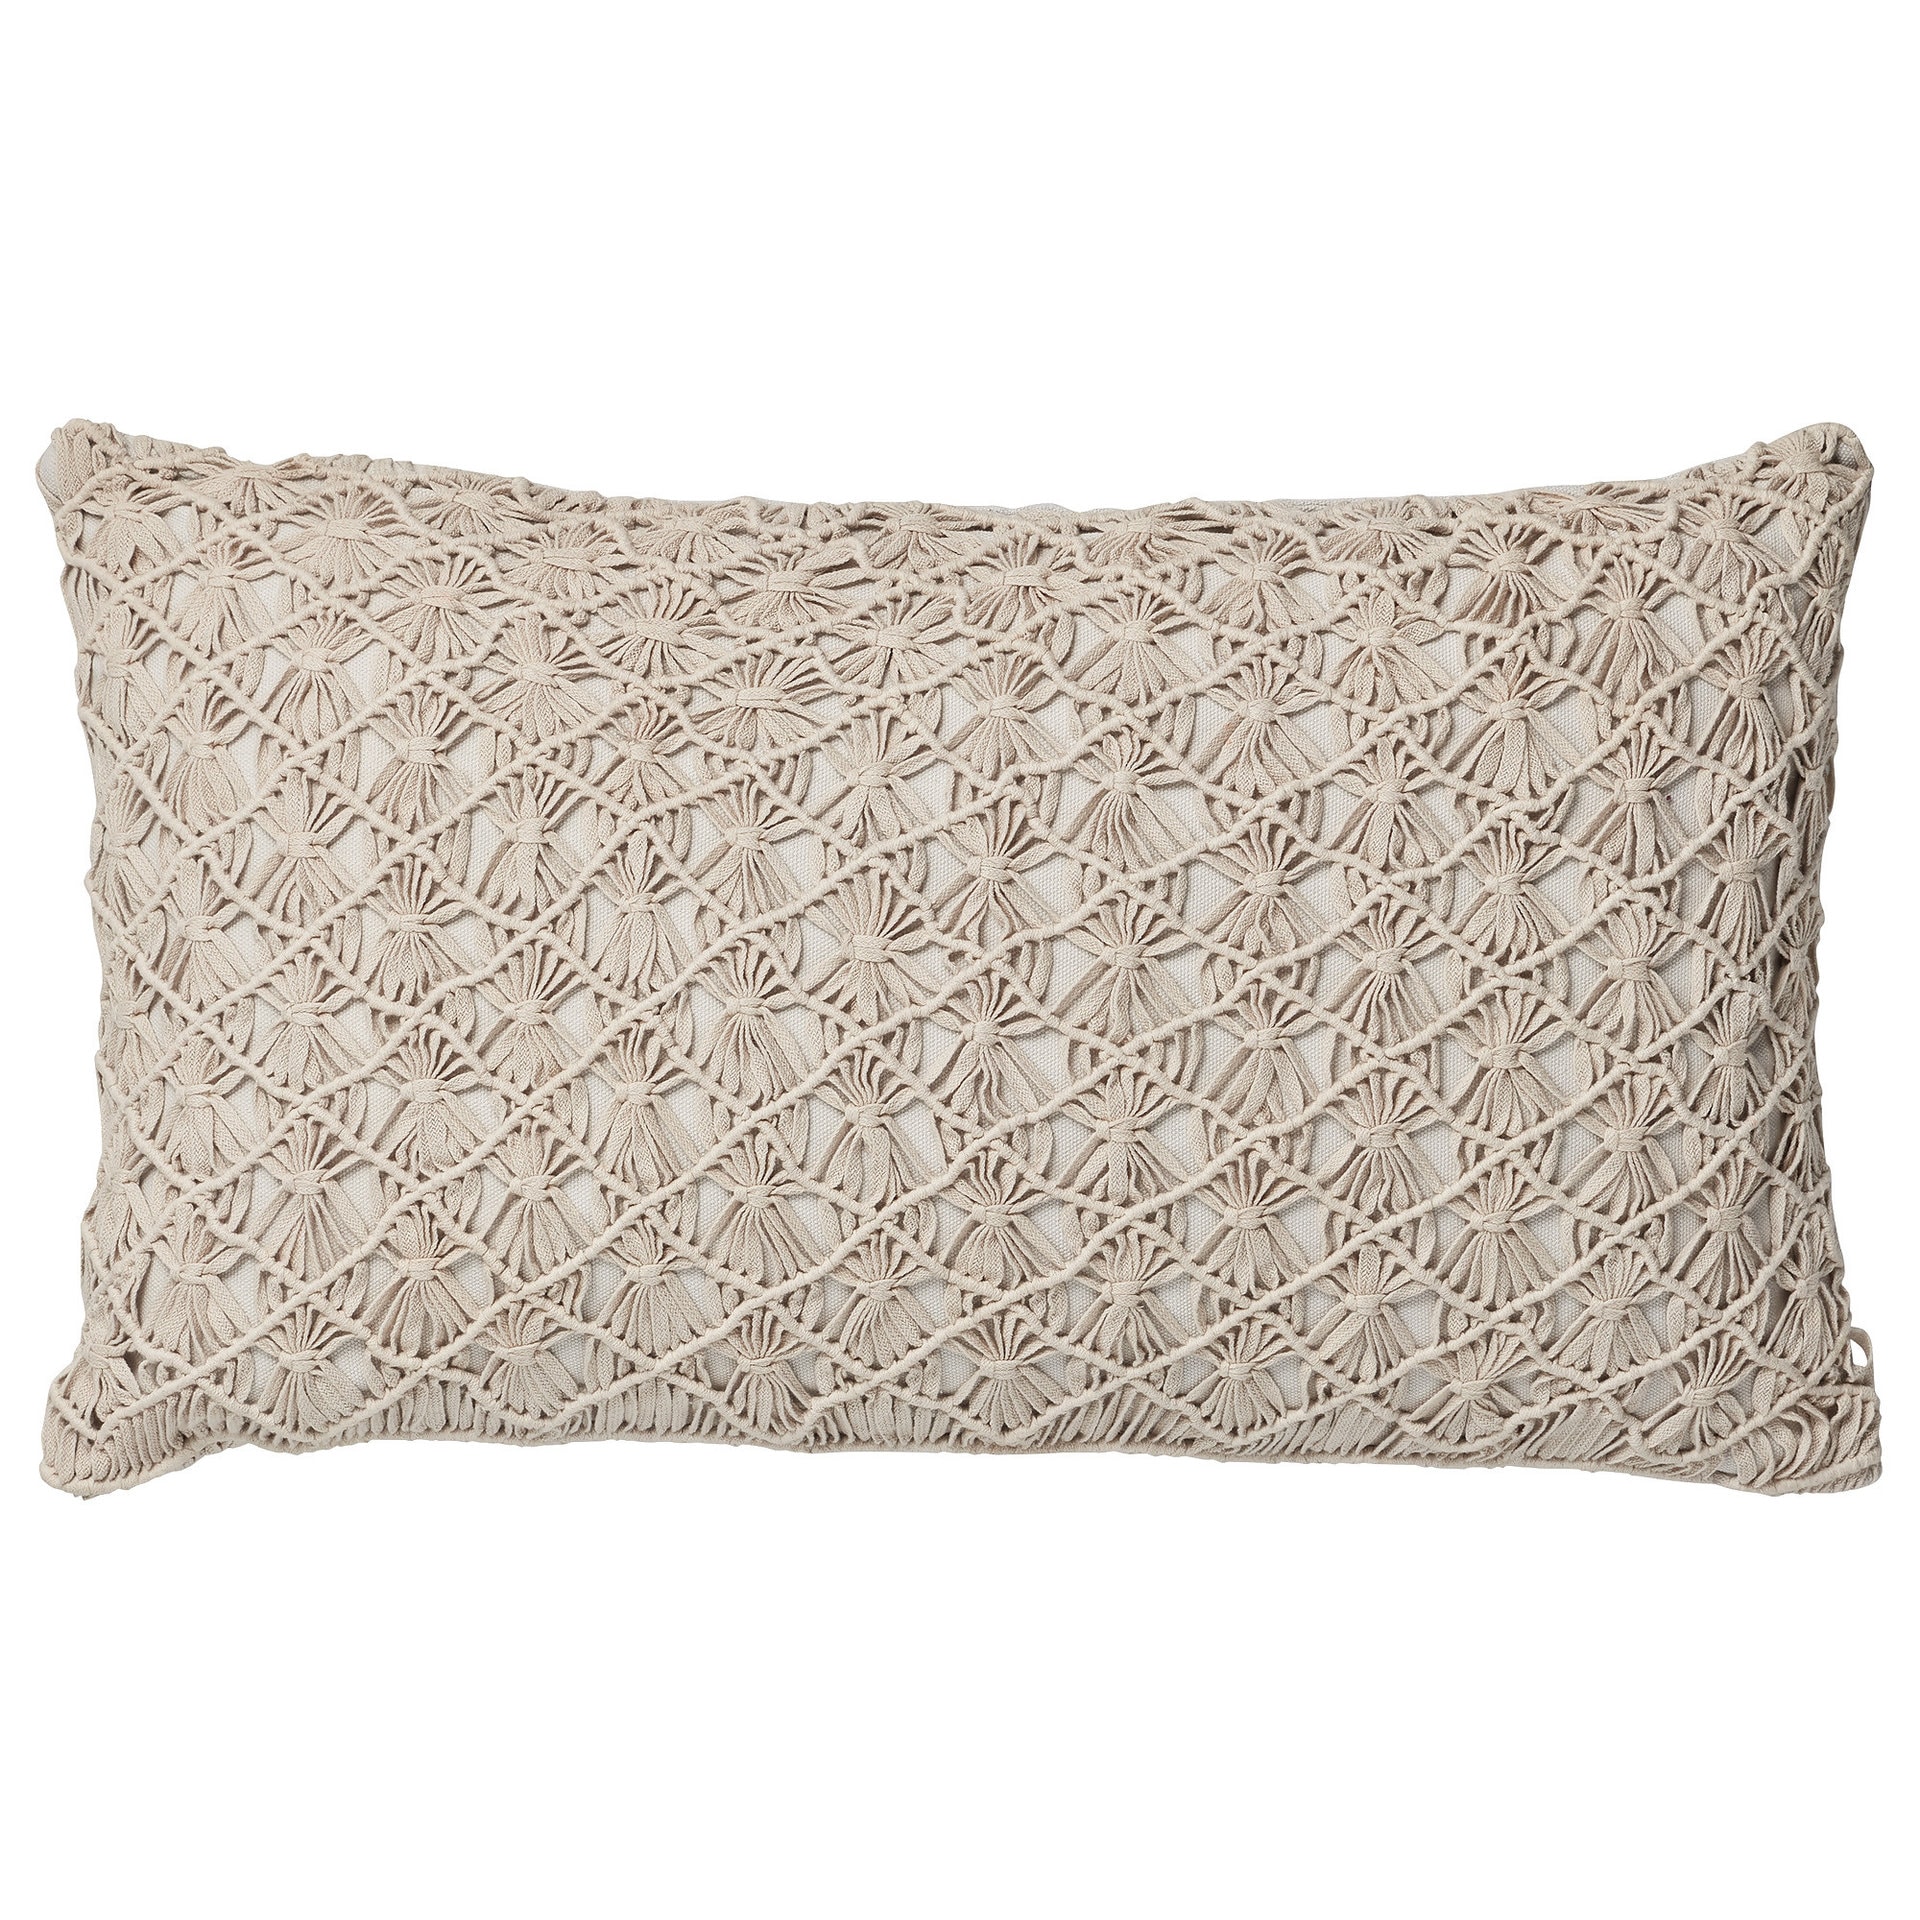 Sashia cushion 50x30 cm.